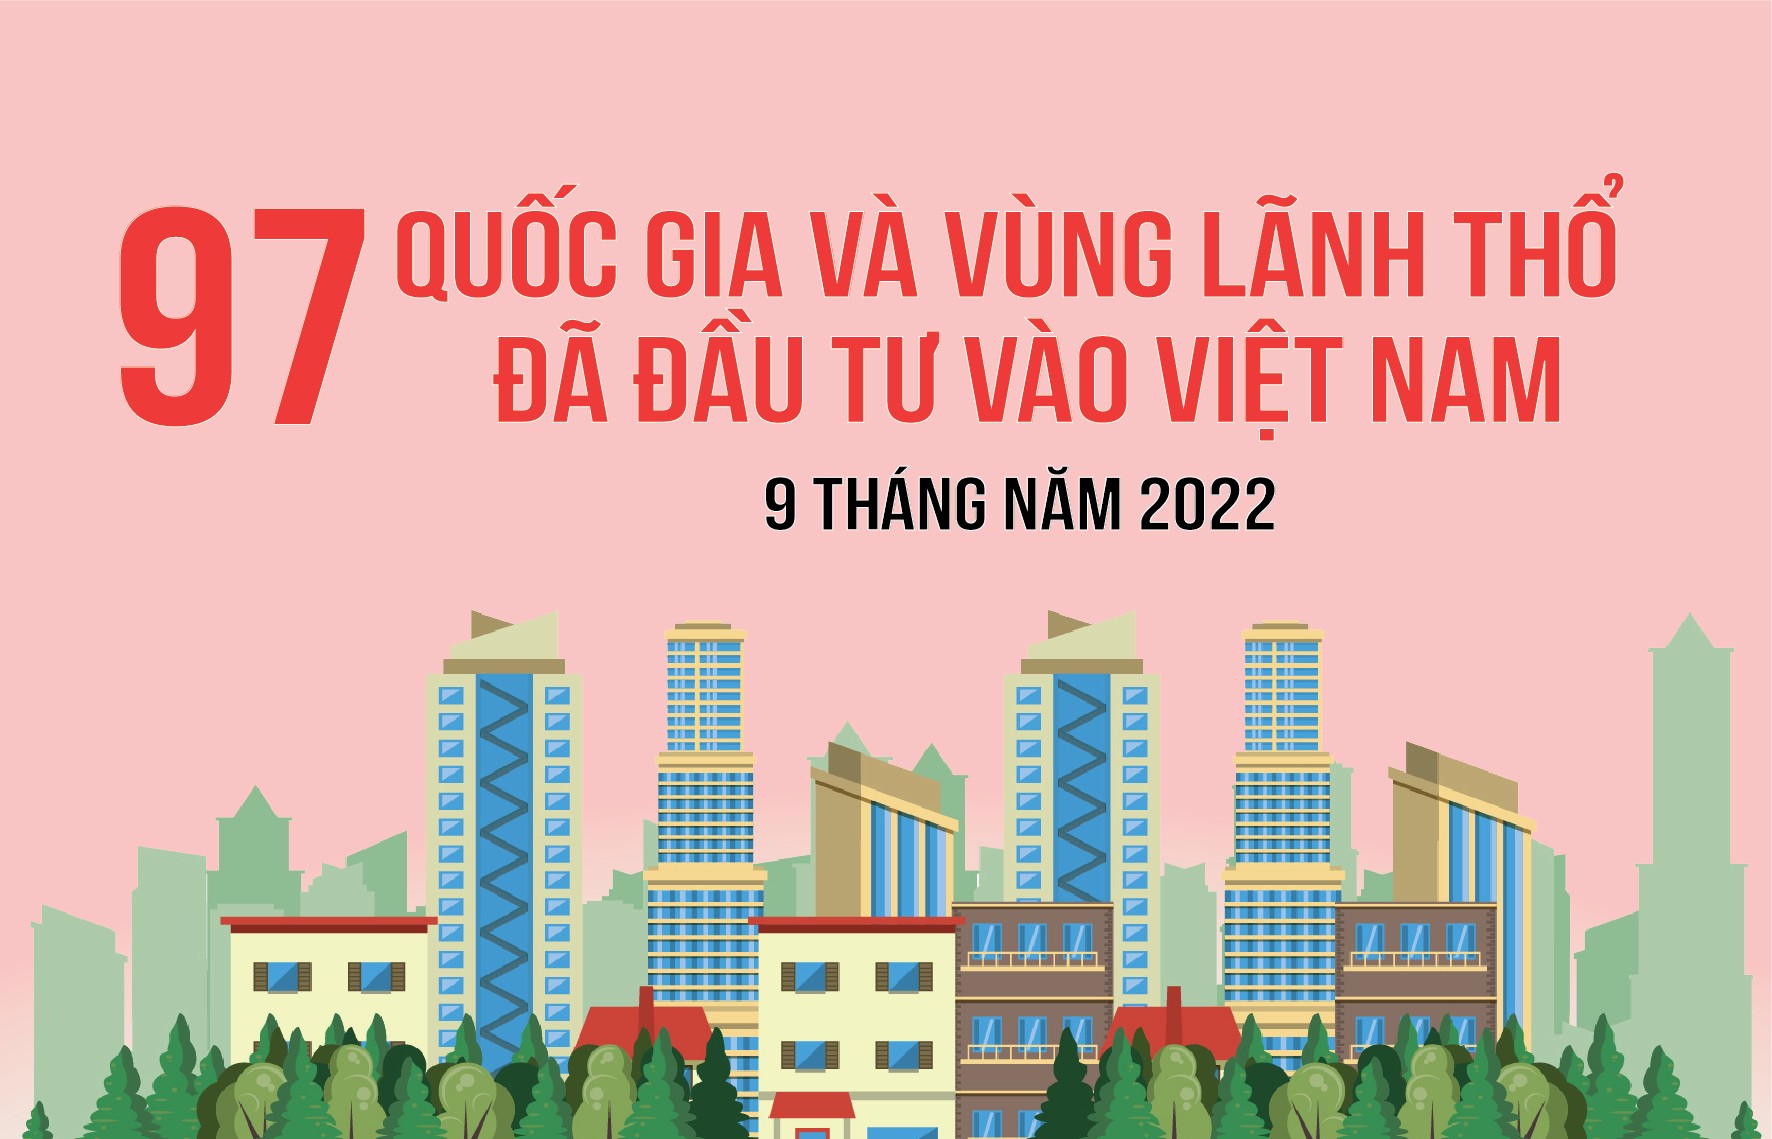 Infographics: 97 quốc gia và vùng lãnh thổ đã đầu tư vào Việt Nam trong 9 tháng năm 2022